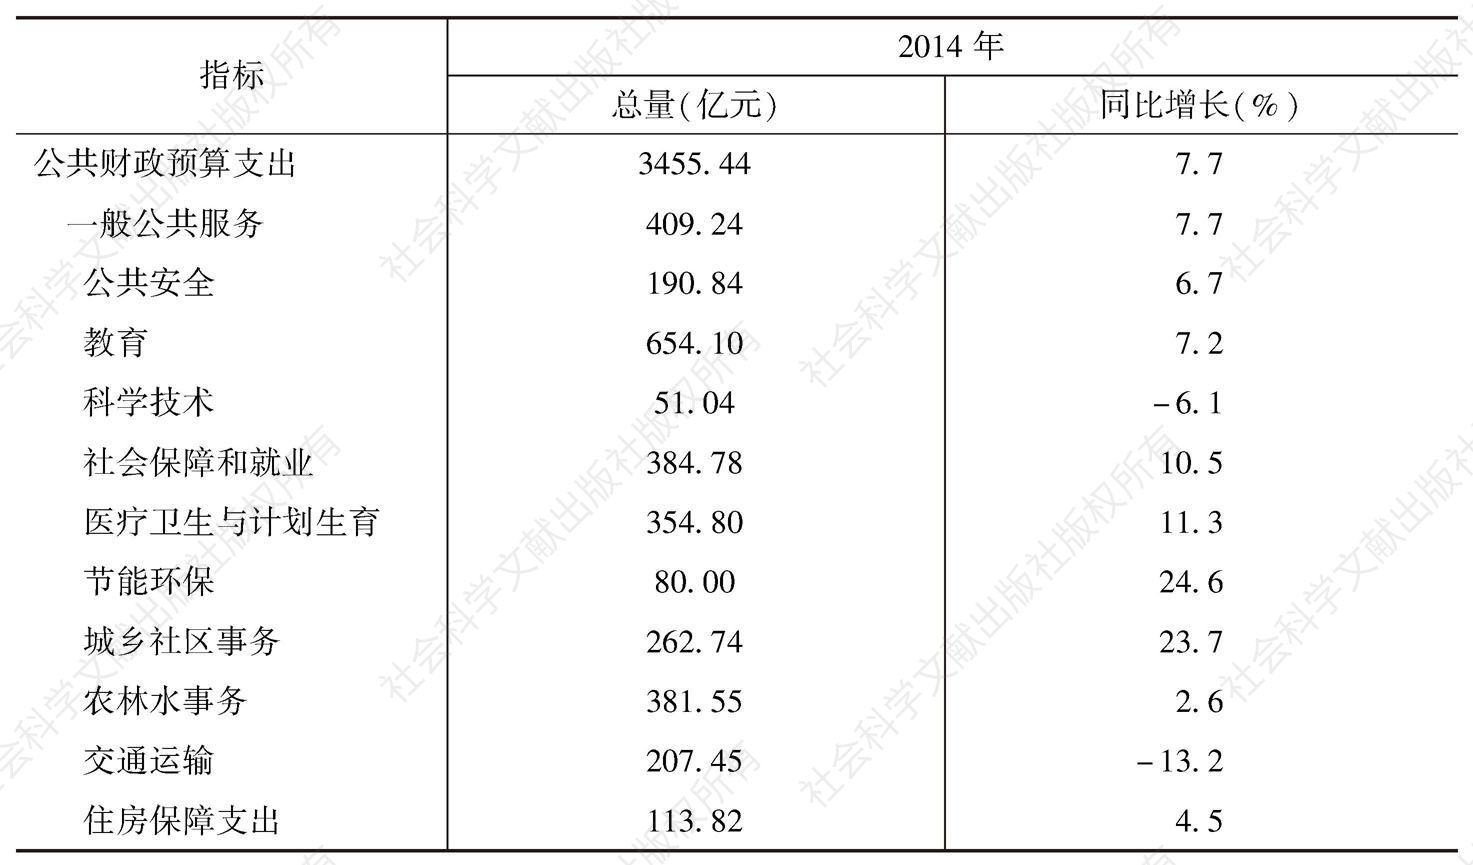 表2 2014年广西公共财政预算支出情况